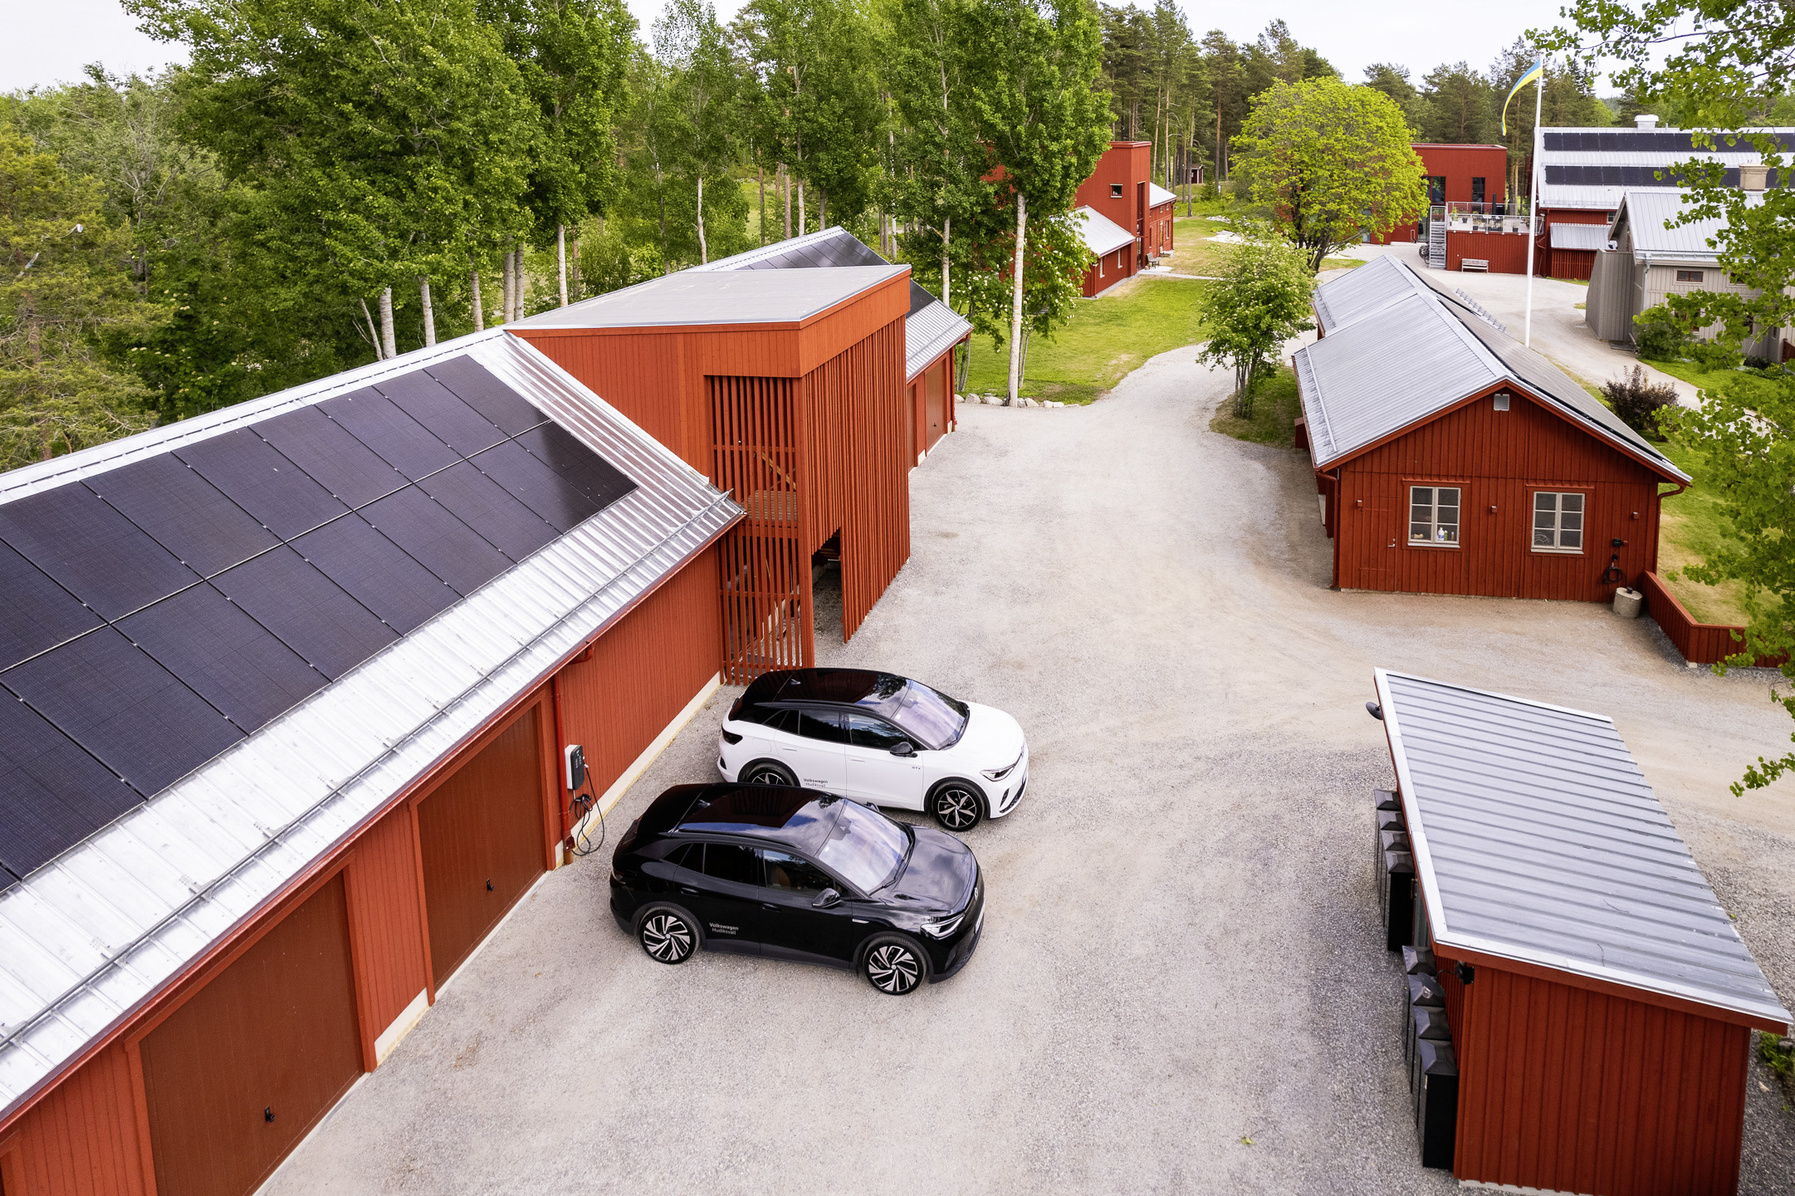 Stenberg housing estate in Hudiksvall, Sweden